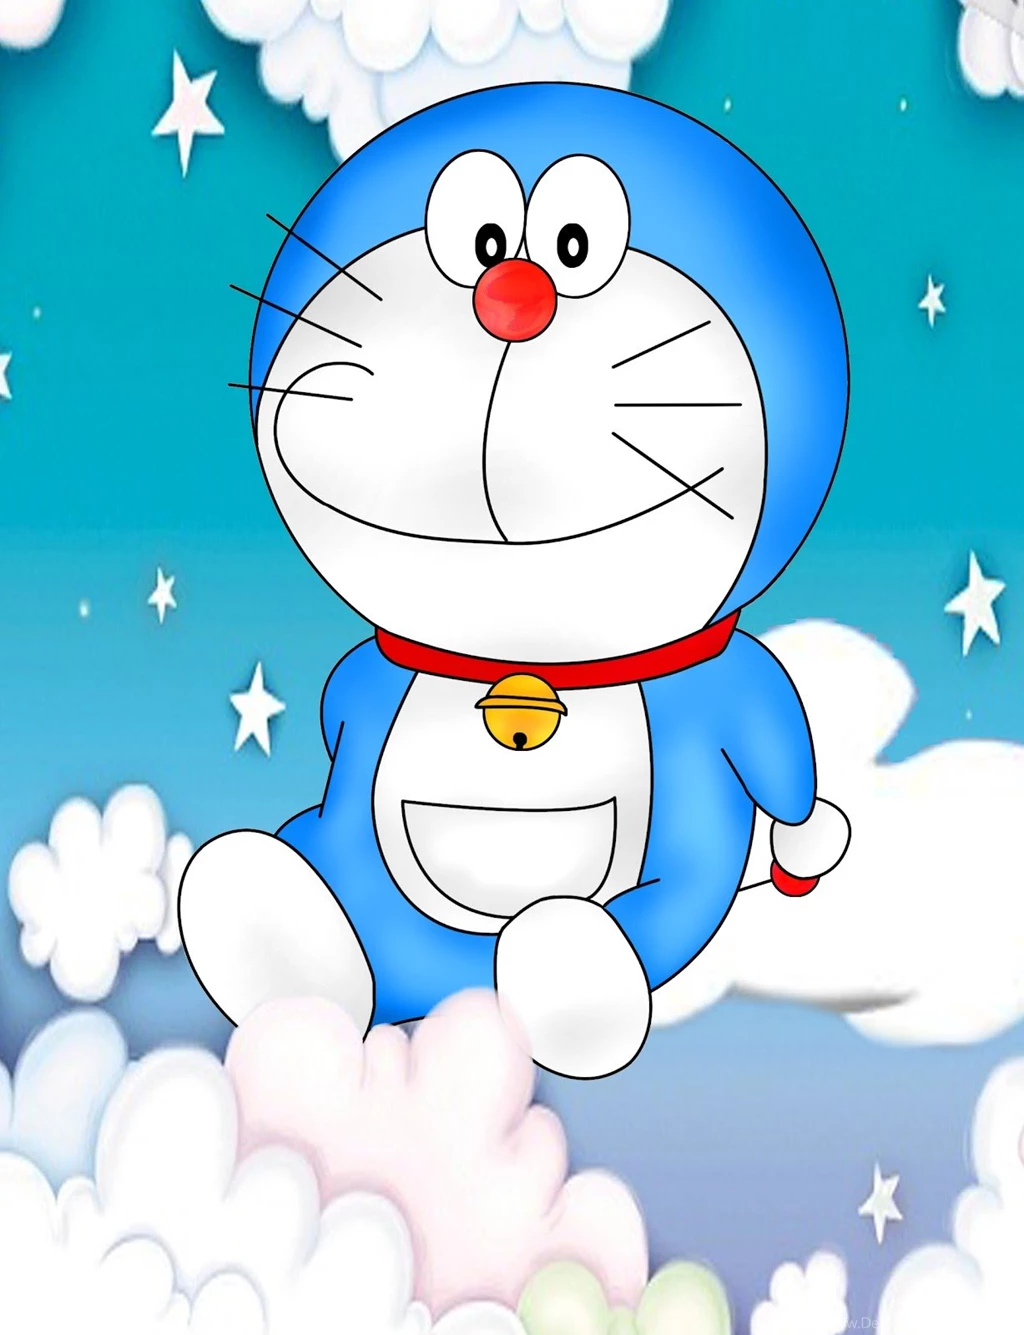 Download Wallpapers Android Doraemon Doraemon Wallpapers Iphone Desktop Background